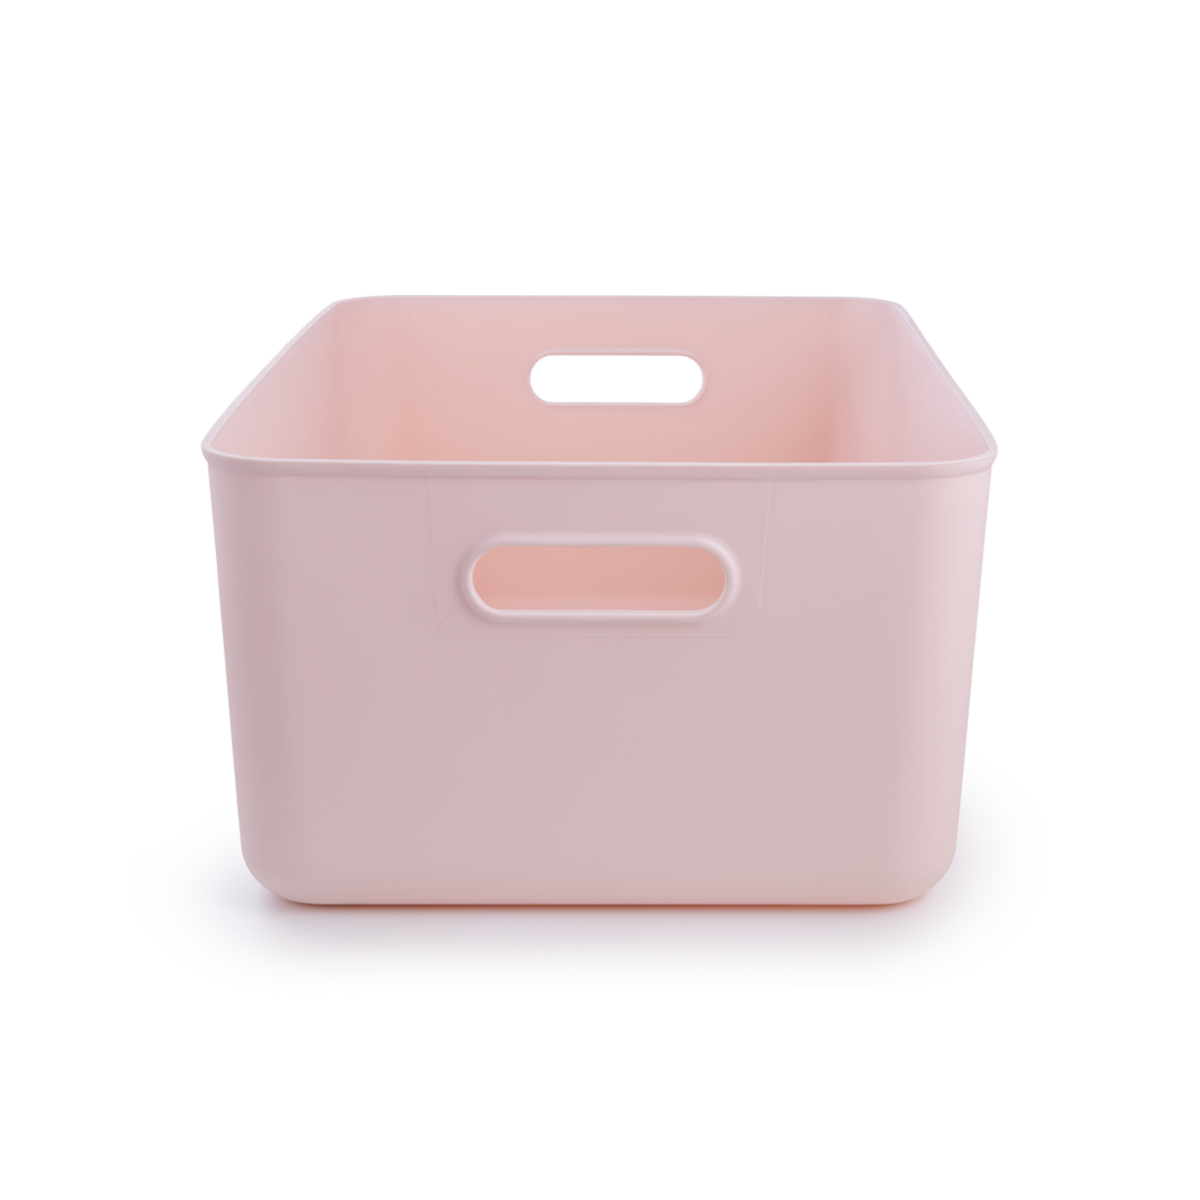 Ящик для хранения MVM пластиковый розовый 160x257x360 FH-13 XL LIGHT PINK